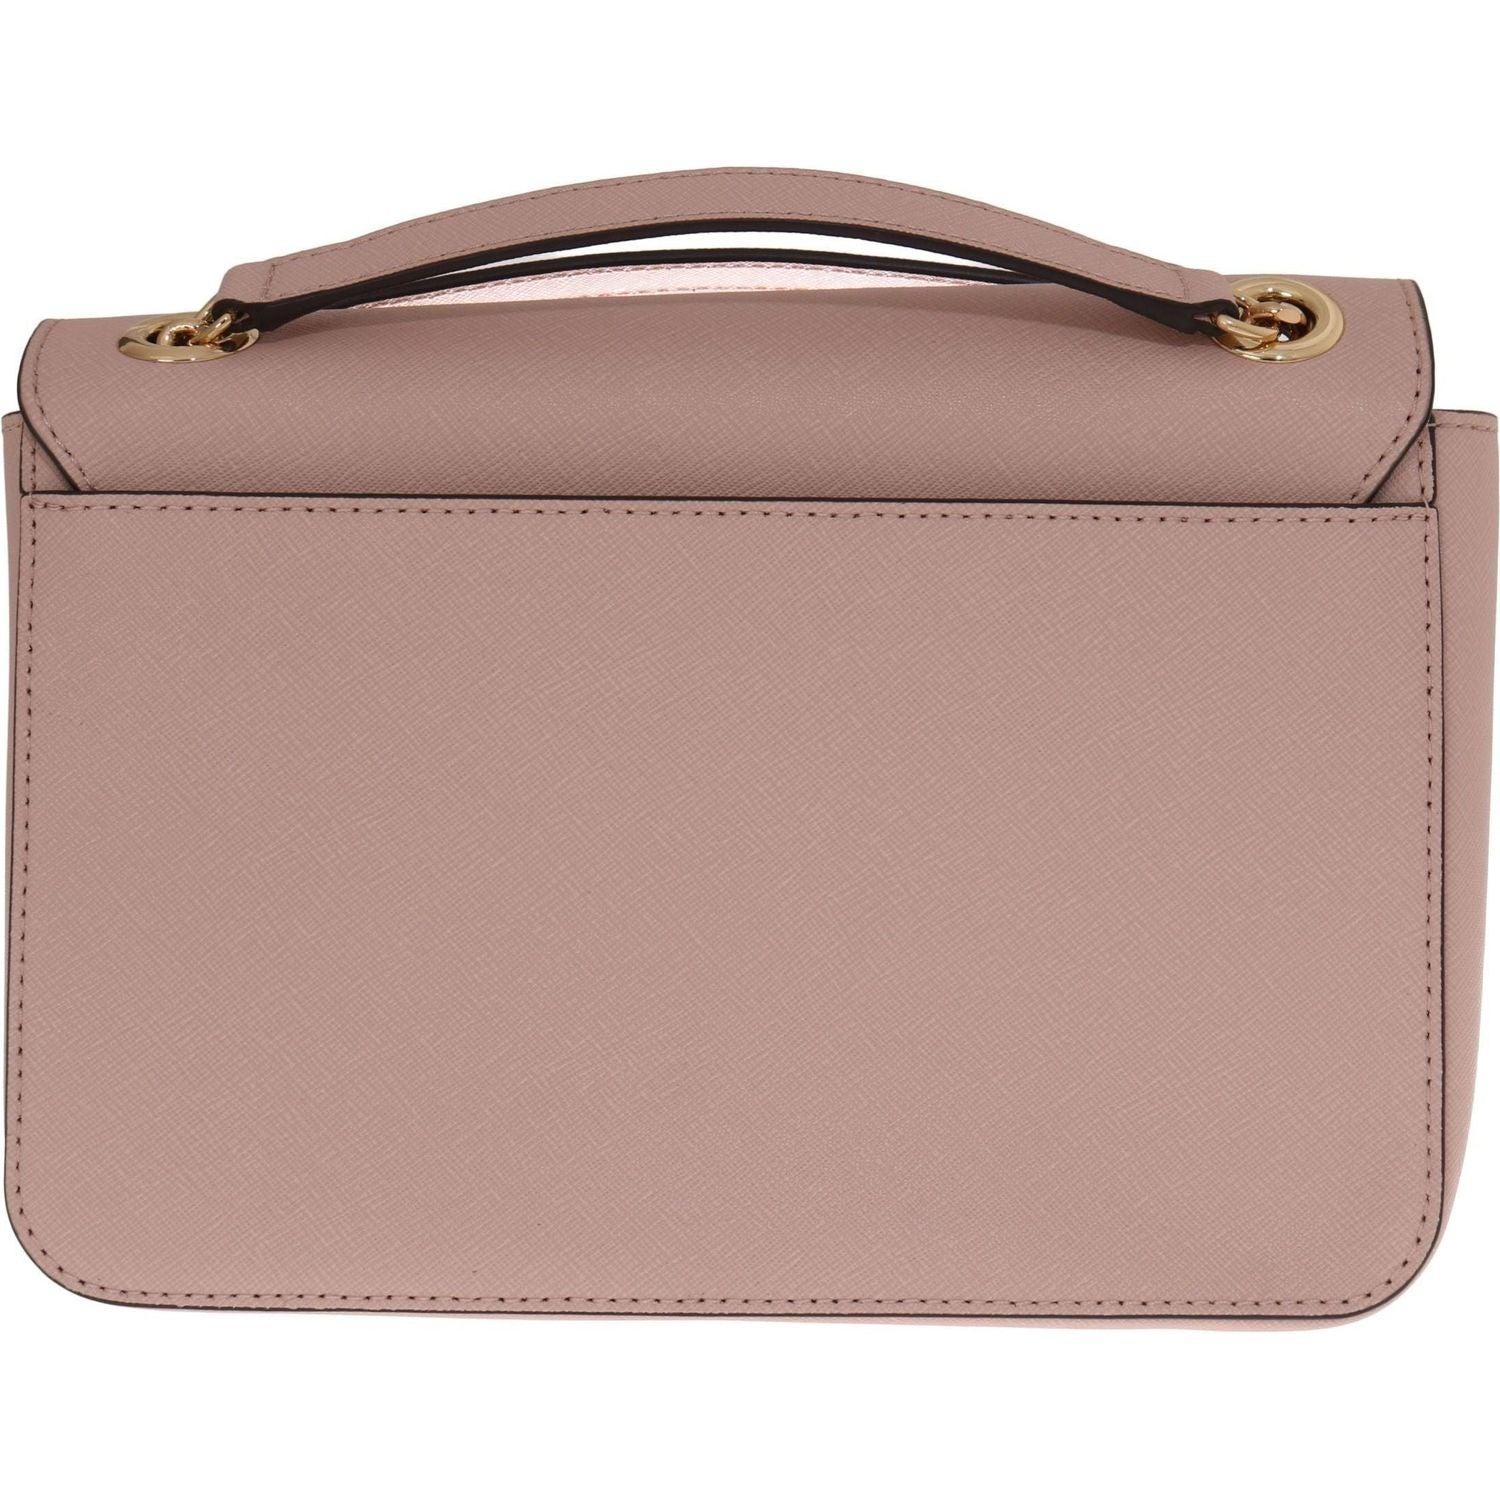 Michael Kors | Pink Tina Leather Shoulder Bag  | McRichard Designer Brands